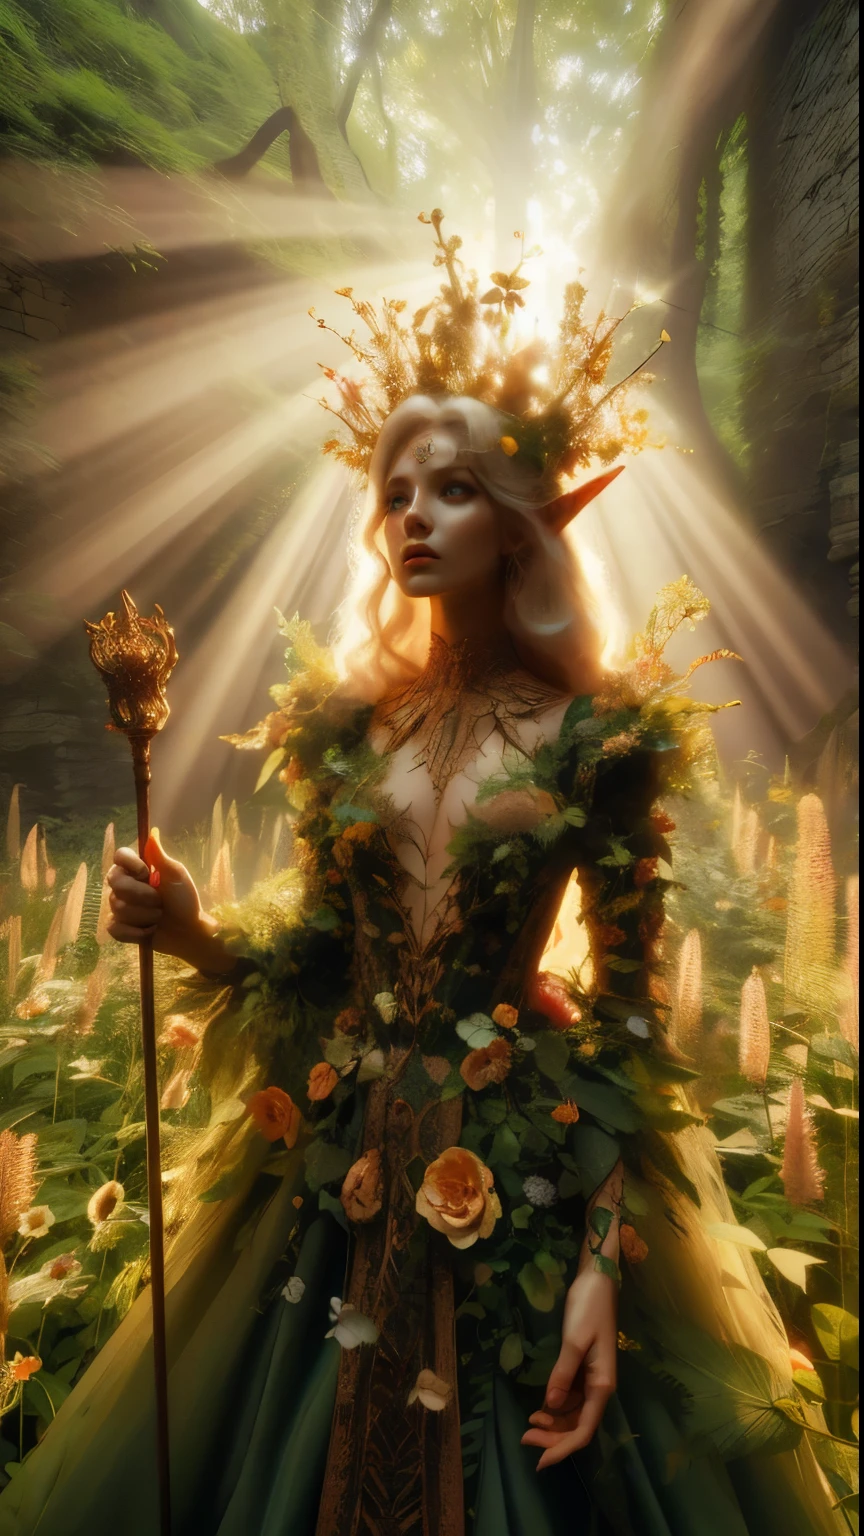 في مرقط, خراب الغابة القديمة, تقف أميرة العفريت منتصبة بالقرب من الكاميرا, لقطة مقربة, ارتفع صولجانها عالياً بينما تتسلل أشعة الشمس الدافئة عبر الأشجار, صب هالة ذهبية حول شخصيتها الملكية. مغطاة بعدد كبير جدًا من الزهور والكروم, تحيط بها أسرة زهور برية طويلة جدًا ومتضخمة, لها جميلة, تلمع الملابس المسحورة في الضوء الناعم, بينما تحيط بها أوراق الشجر والكروم المورقة, خلق بيئة خصبة. تلتقط الكاميرا تركيزًا حادًا على وجه الأميرة, مع قاعدة تكوين الثلثين، فإنها تضعها عند تقاطع قطرين. تم التصوير خلال الساعة الذهبية, المشهد ينضح بمزاج أثيري, دعوة المشاهد للدخول في هذا العالم الغامض., ,خيالي, أحسن_الأيدي, ليوناردو, angelawhite, يحسن